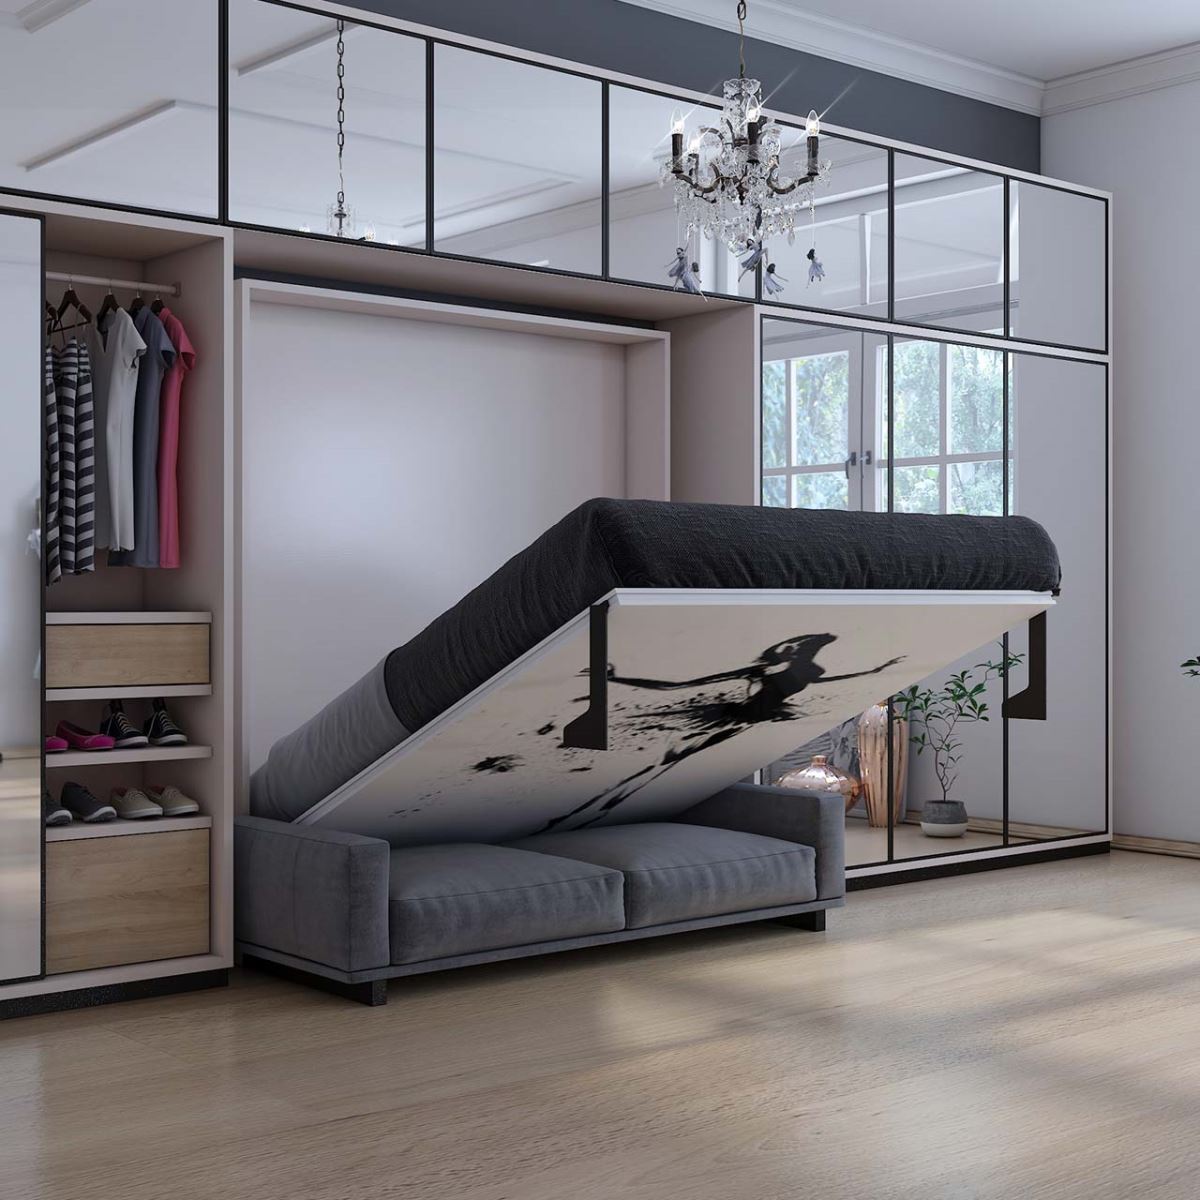 Giường ngủ âm tường - Xu hướng mới cho không gian khách sạn 2020